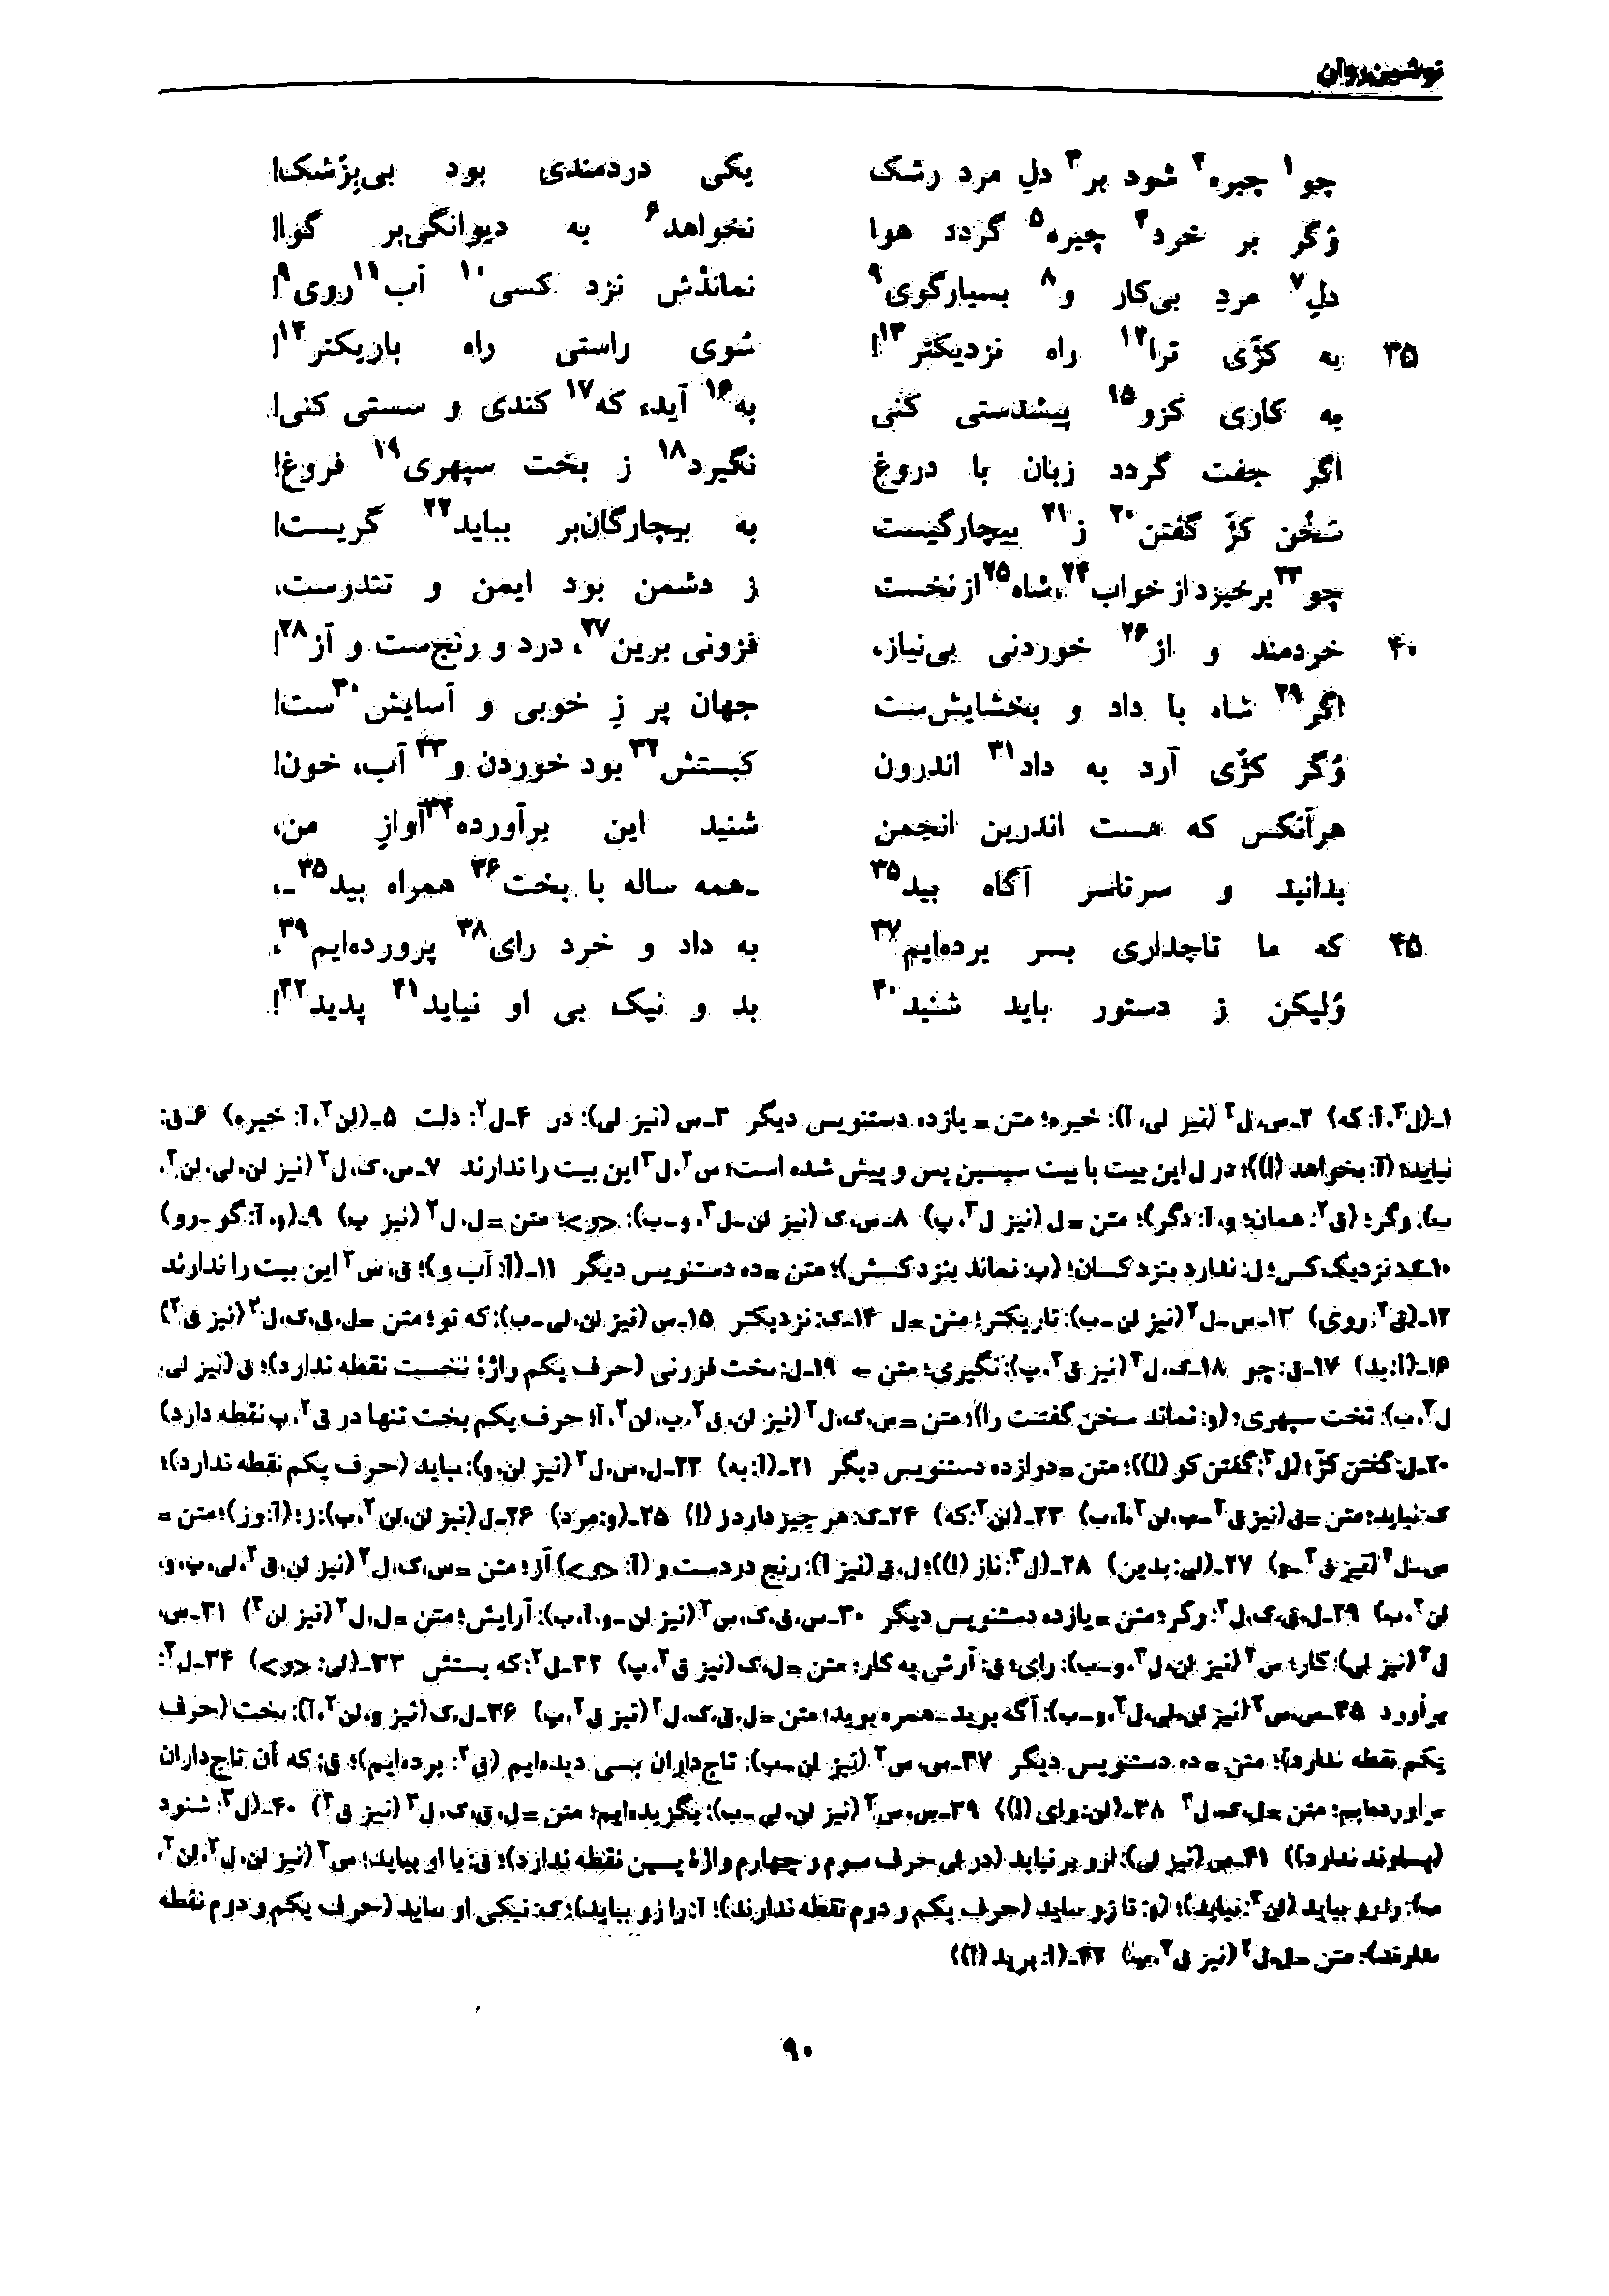 vol. 7, p. 90